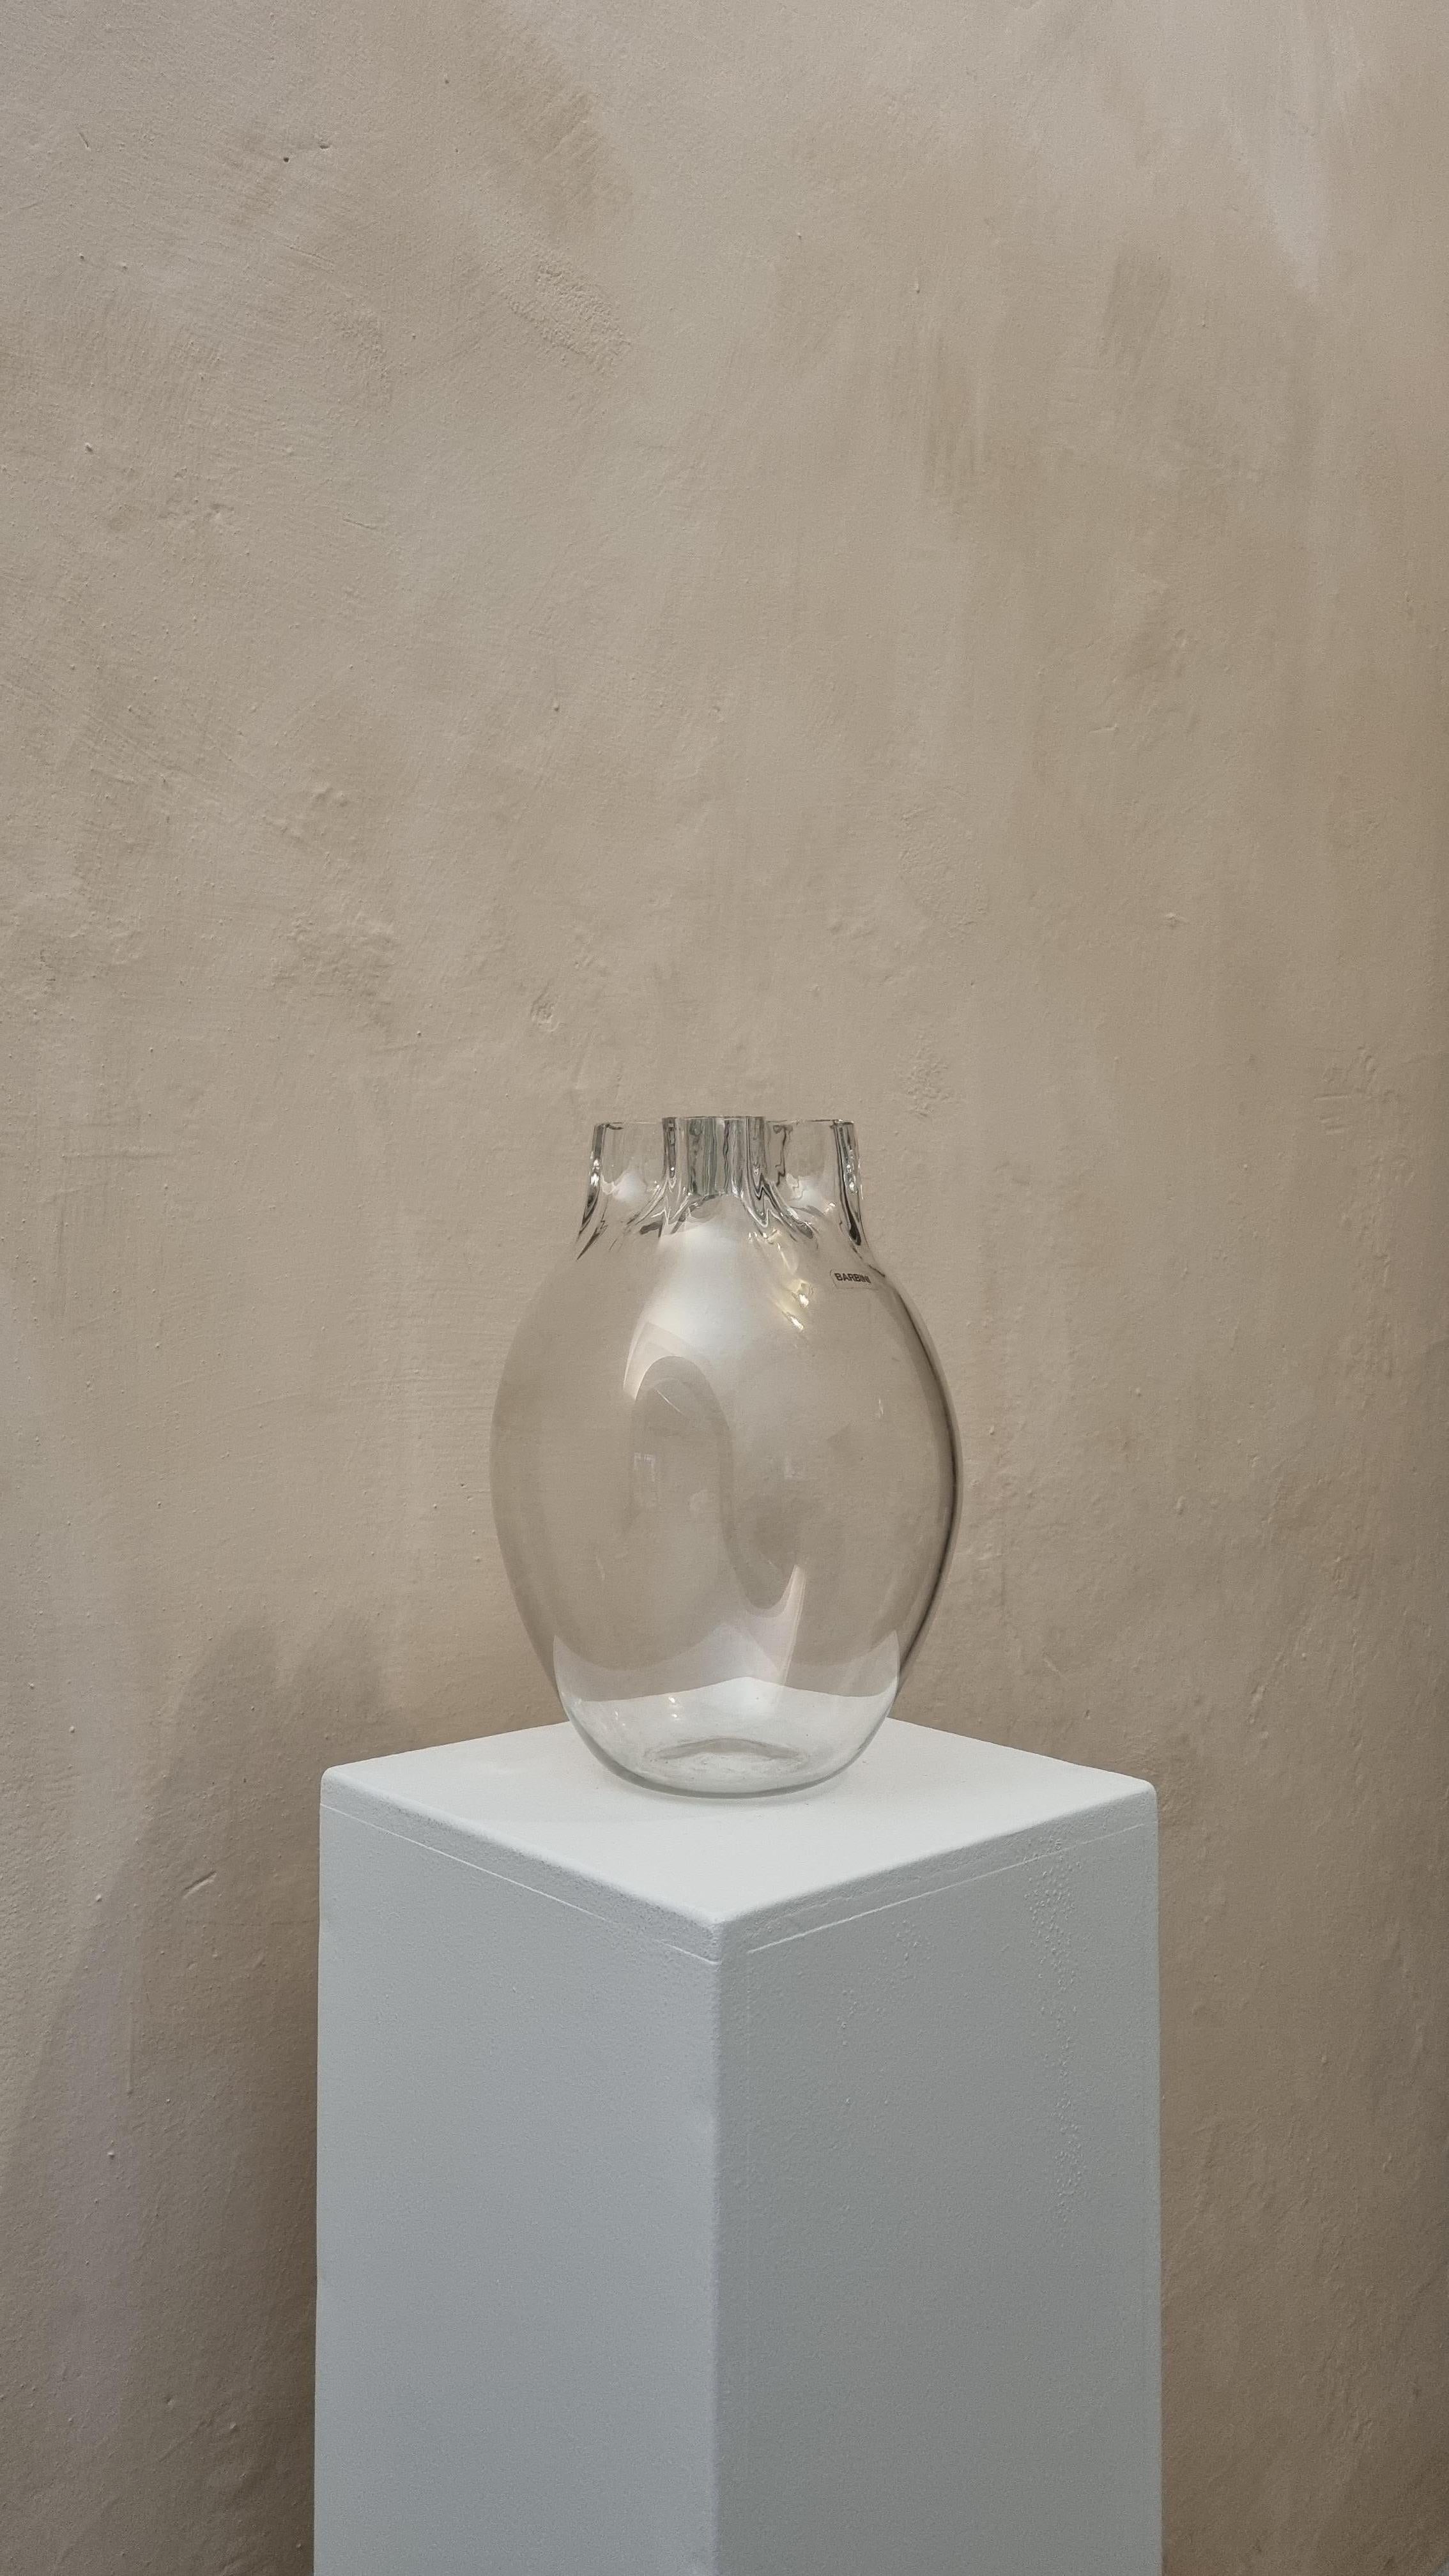 Pflanzgefäß aus Glas von Alfredo Barbini, Glashütte Barbini Murano, 70er Jahre.
Murano-Glas.
Alfredo Barbini (1912-2007) Einer der größten Murano-Glaskünstler des zwanzigsten Jahrhunderts. Er erlernte die traditionellen Techniken der Glasbläserei